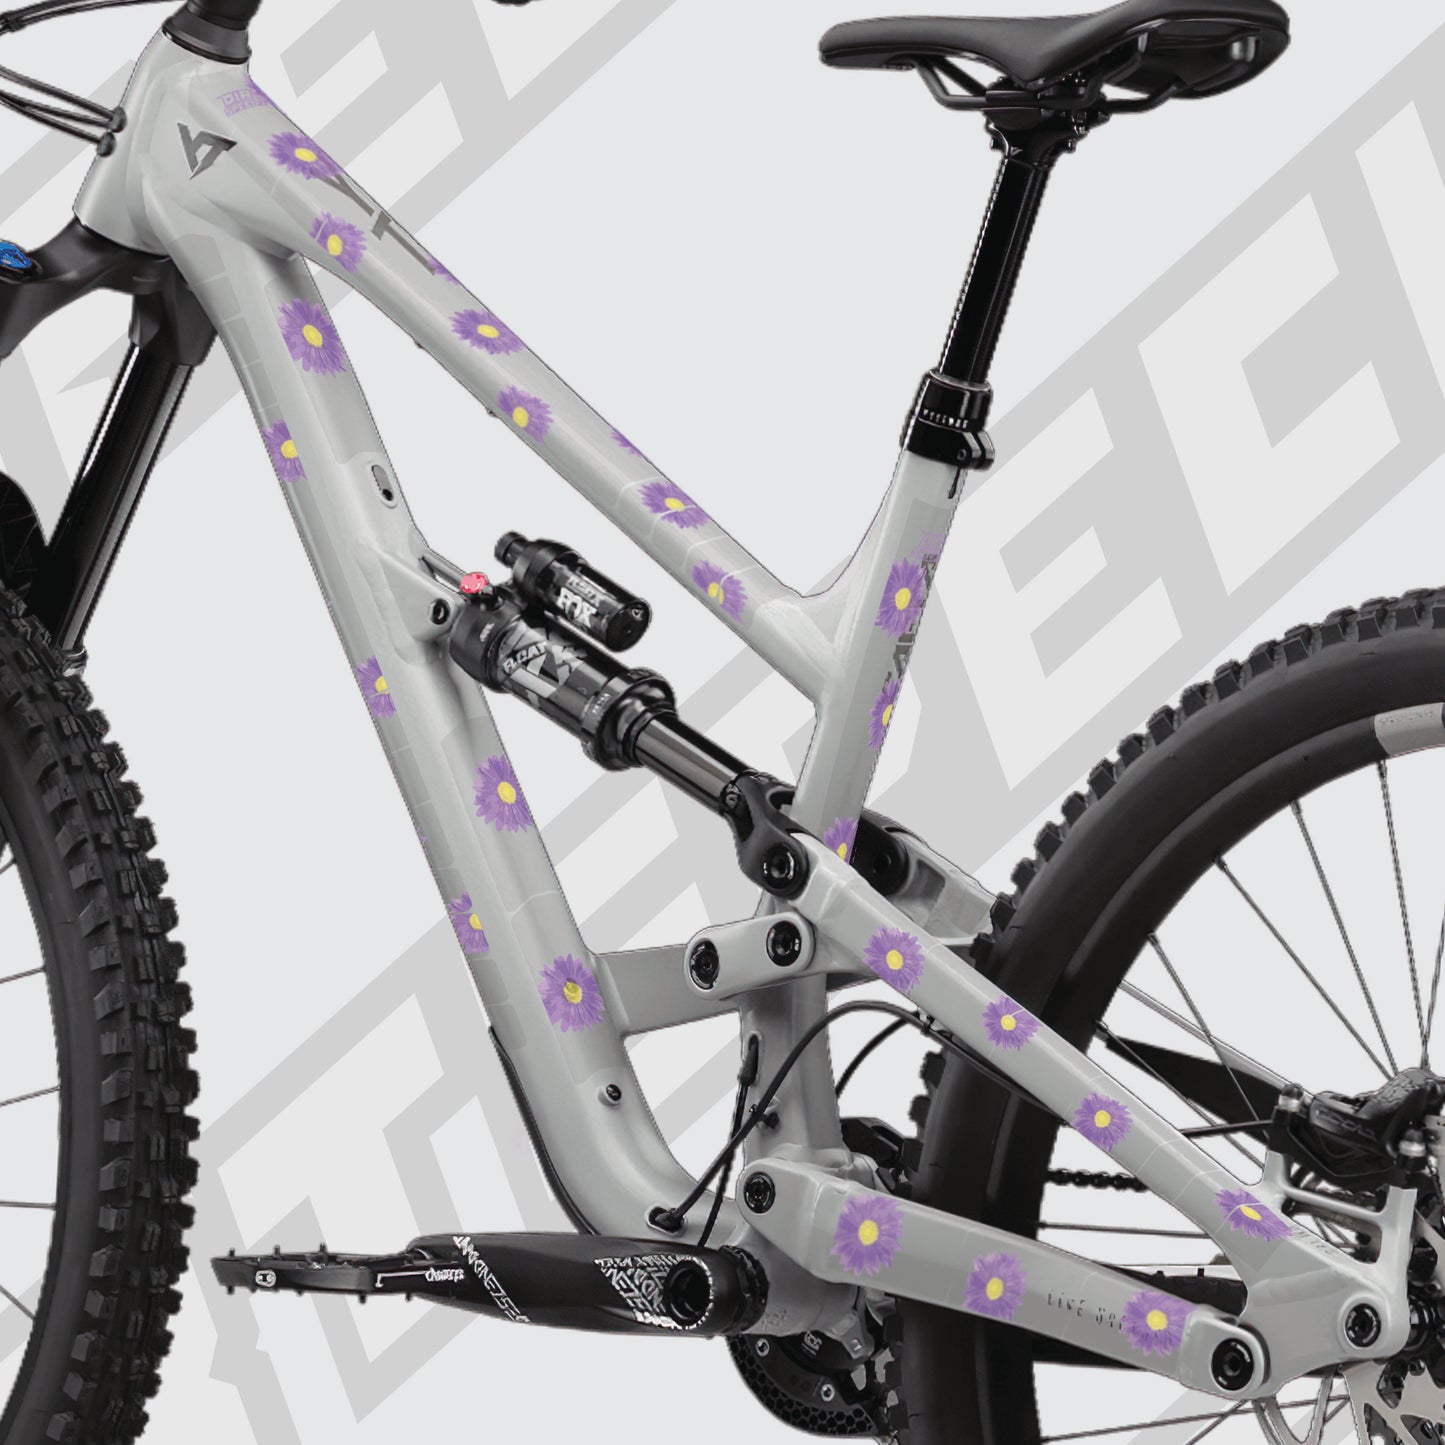 Violet bike decal